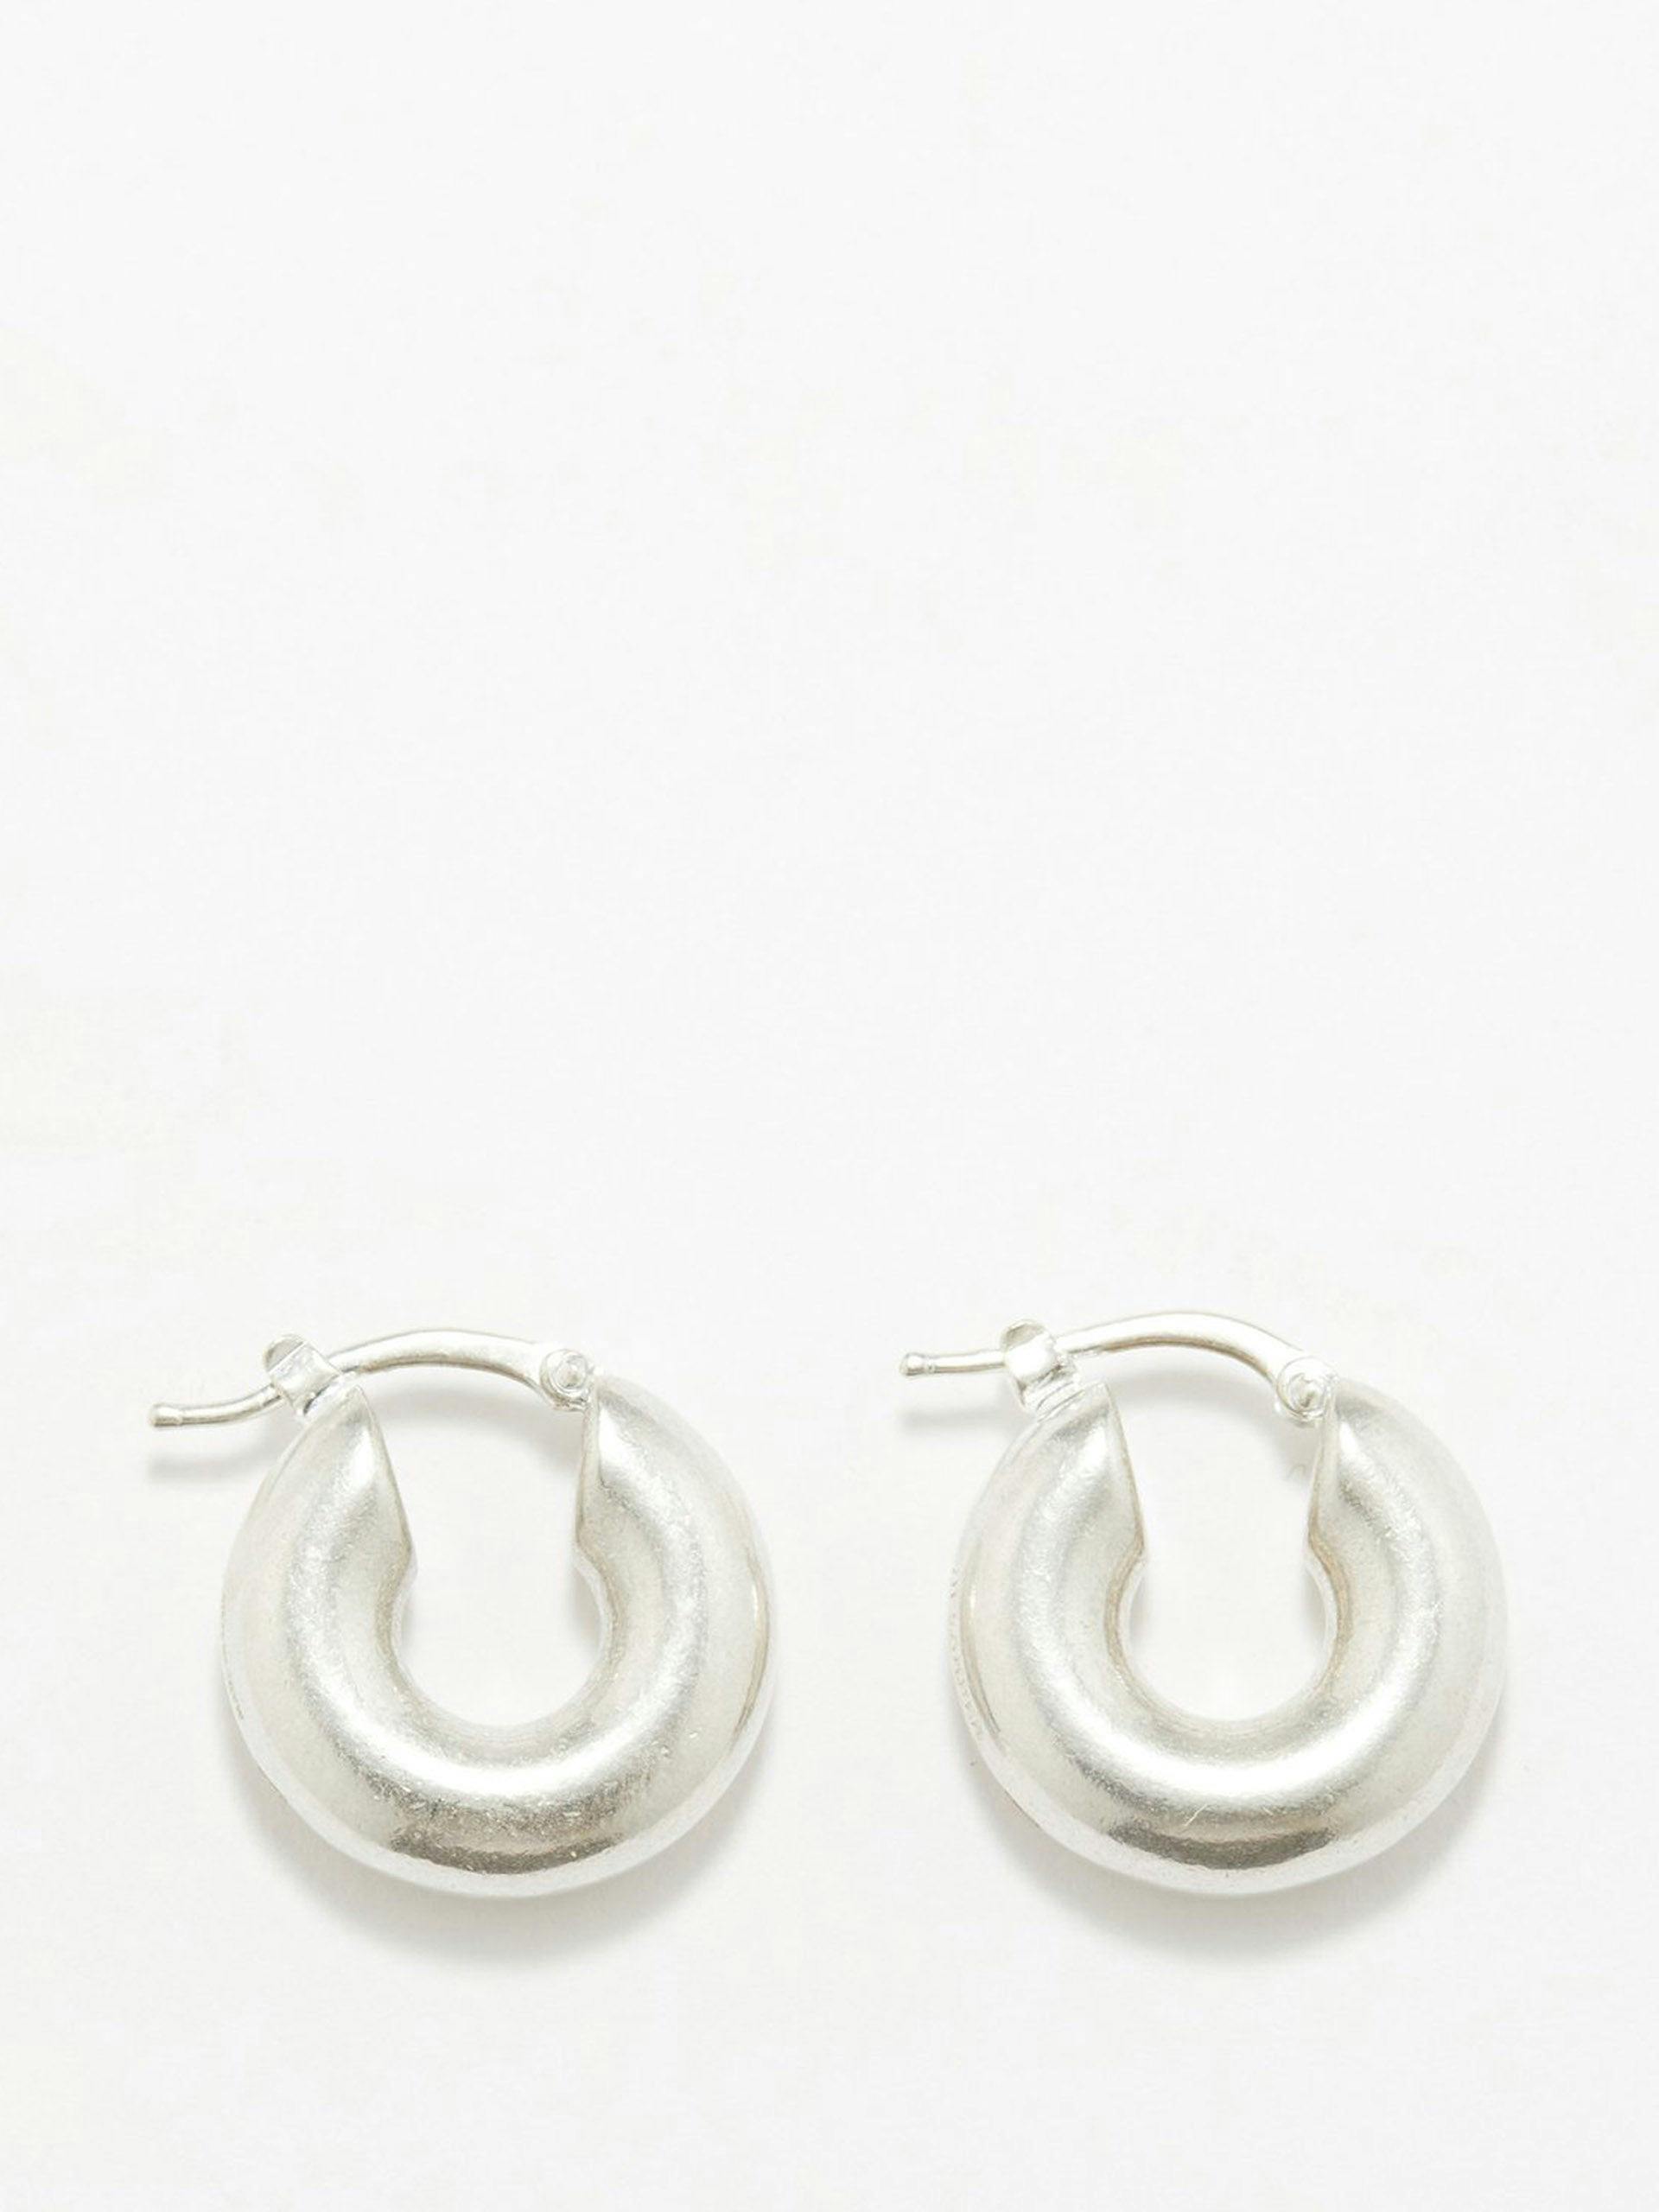 Sterling-silver hoop earrings